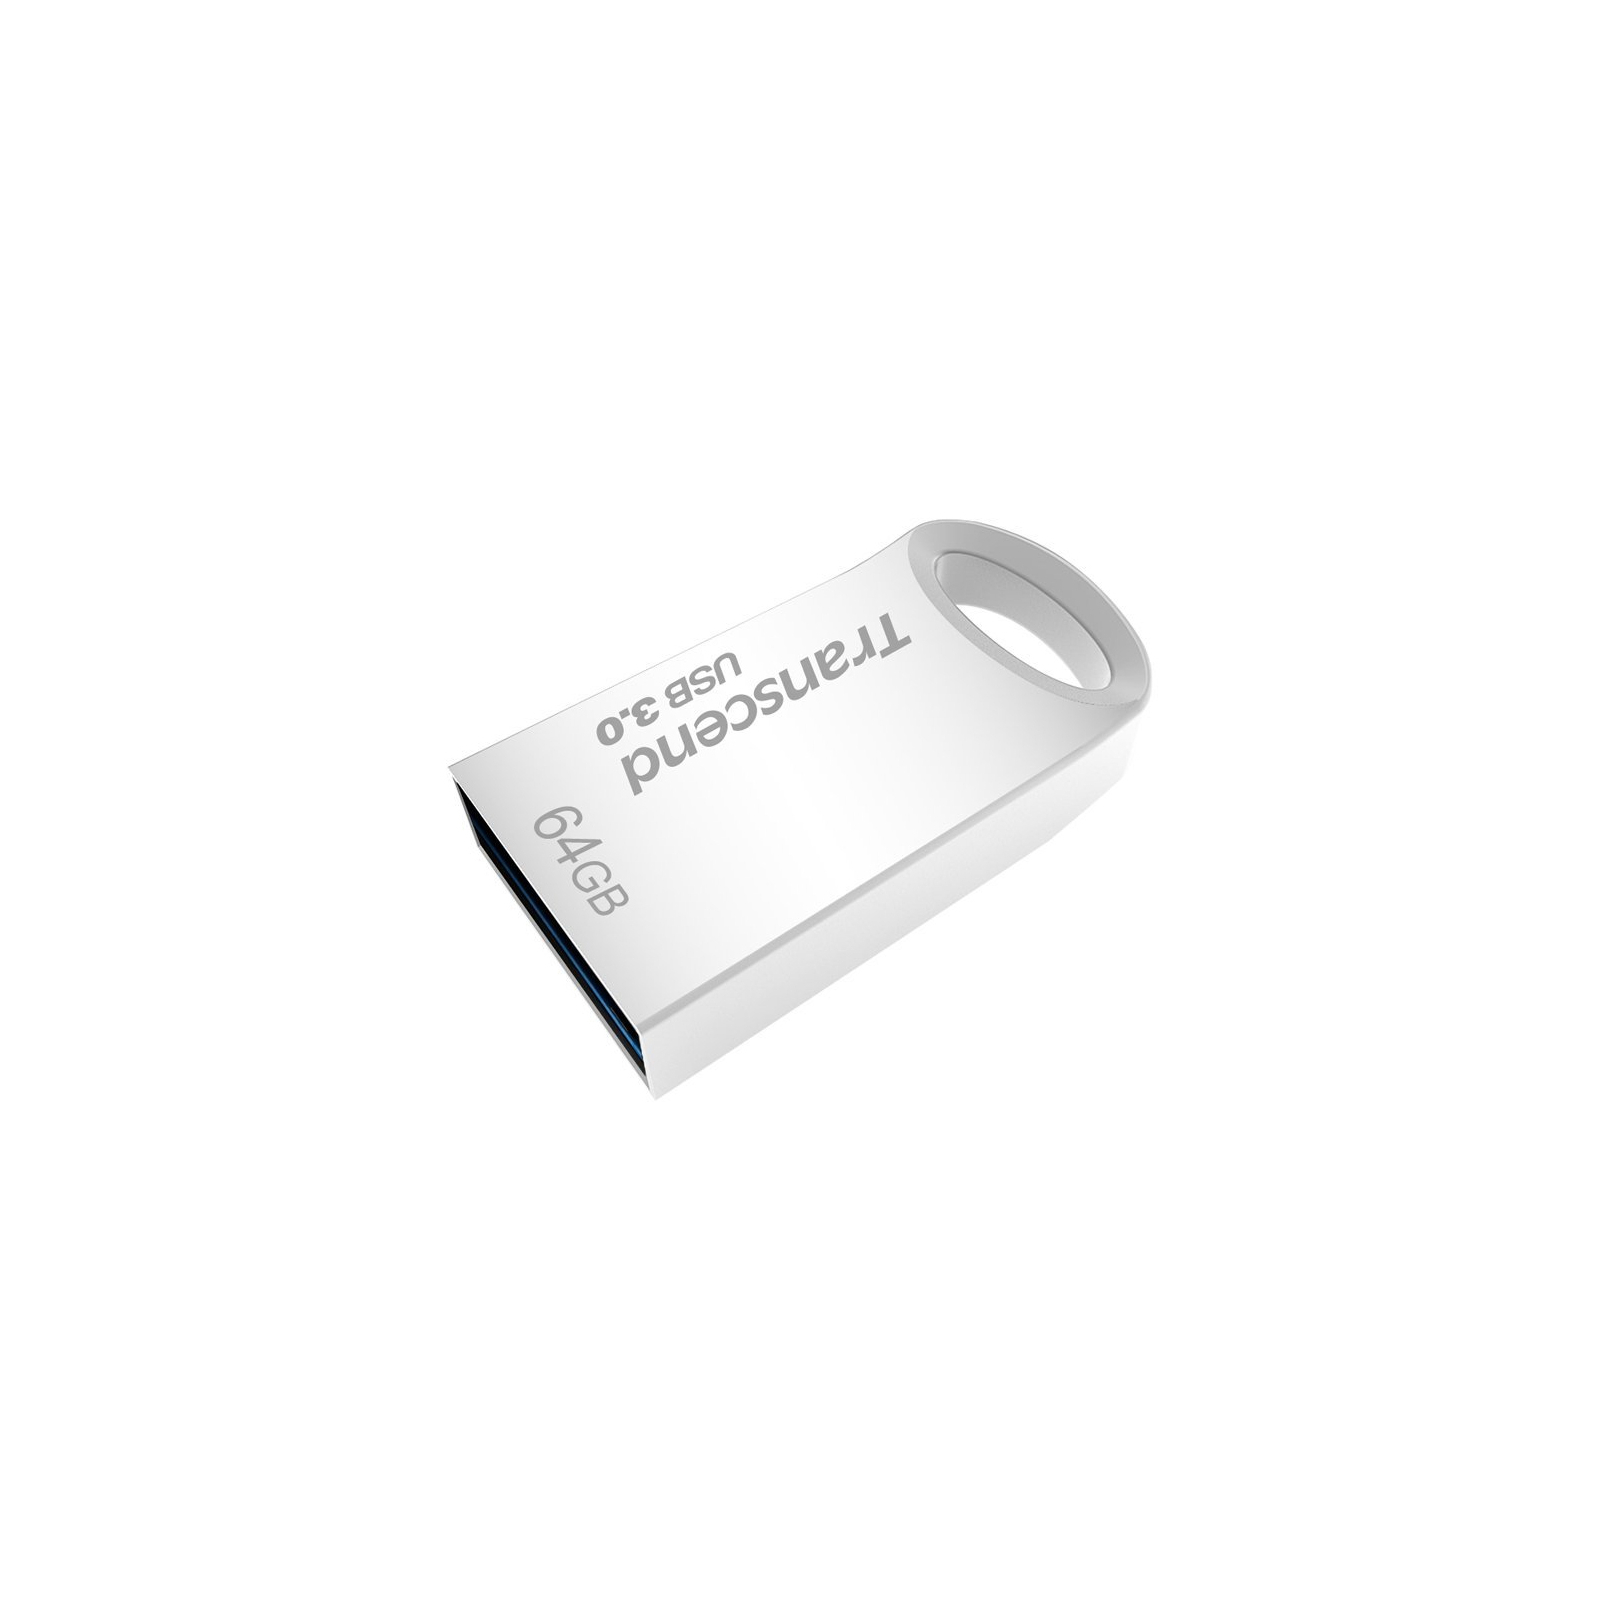 USB флеш накопитель Transcend 32GB JetFlash 710 Metal Gold USB 3.0 (TS32GJF710G) изображение 2